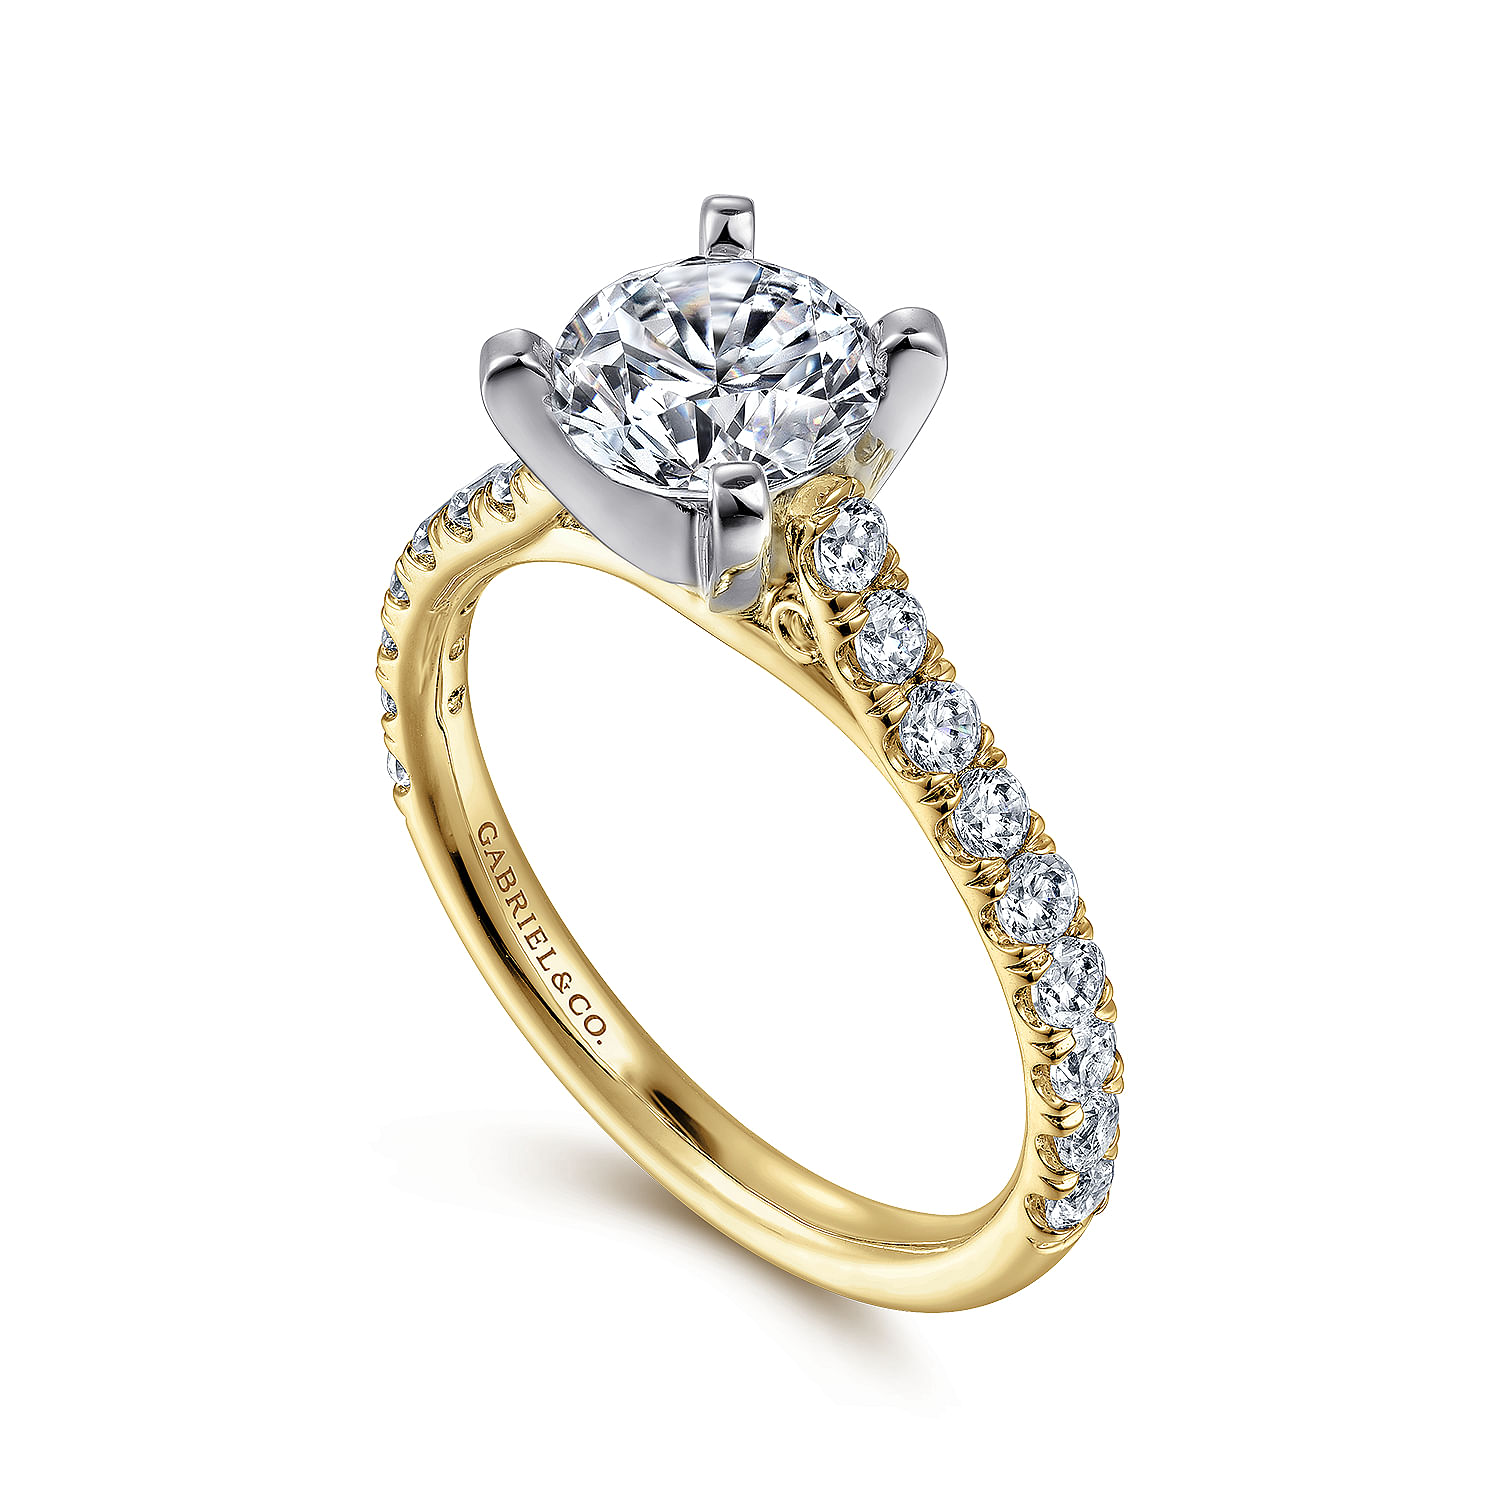 Erica - 14K White-Yellow Gold Round Diamond Engagement Ring - 0.51 ct - Shot 3